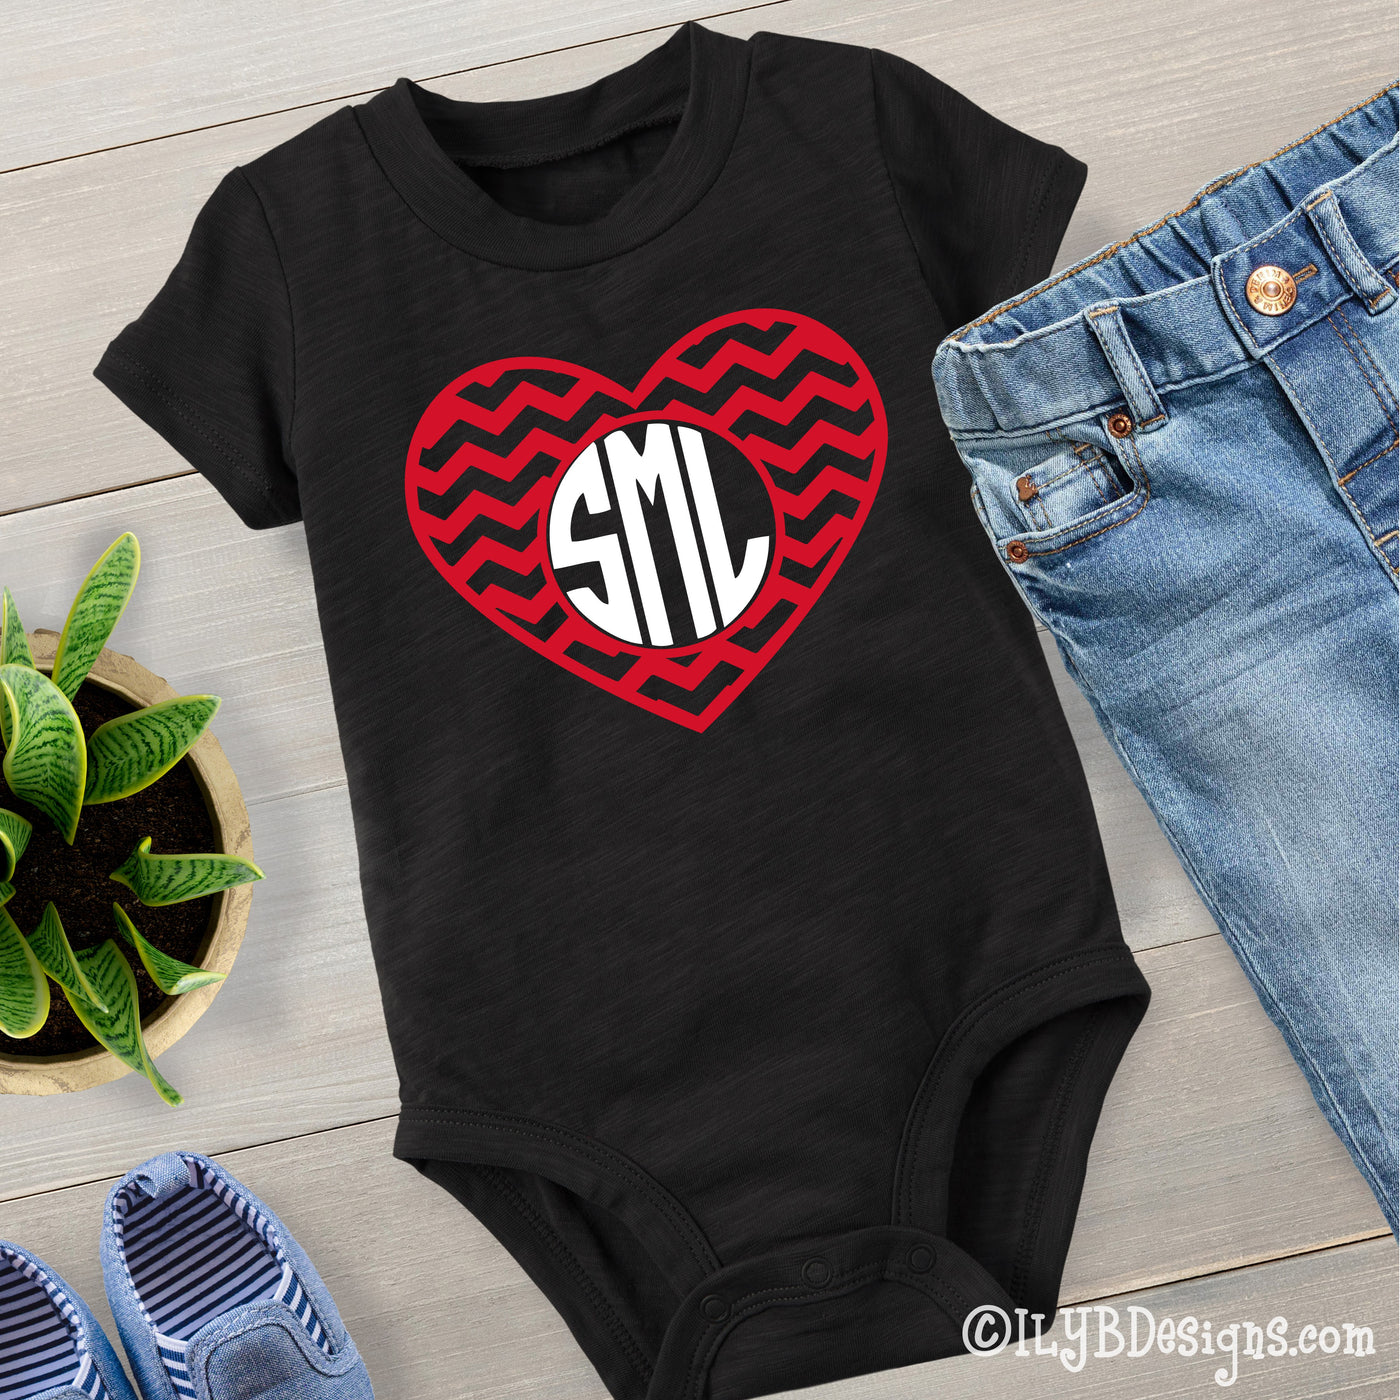 Monogram Heart Valentine's Day Bodysuit - Baby Girl's Valentine Bodysuit - ILYB Designs